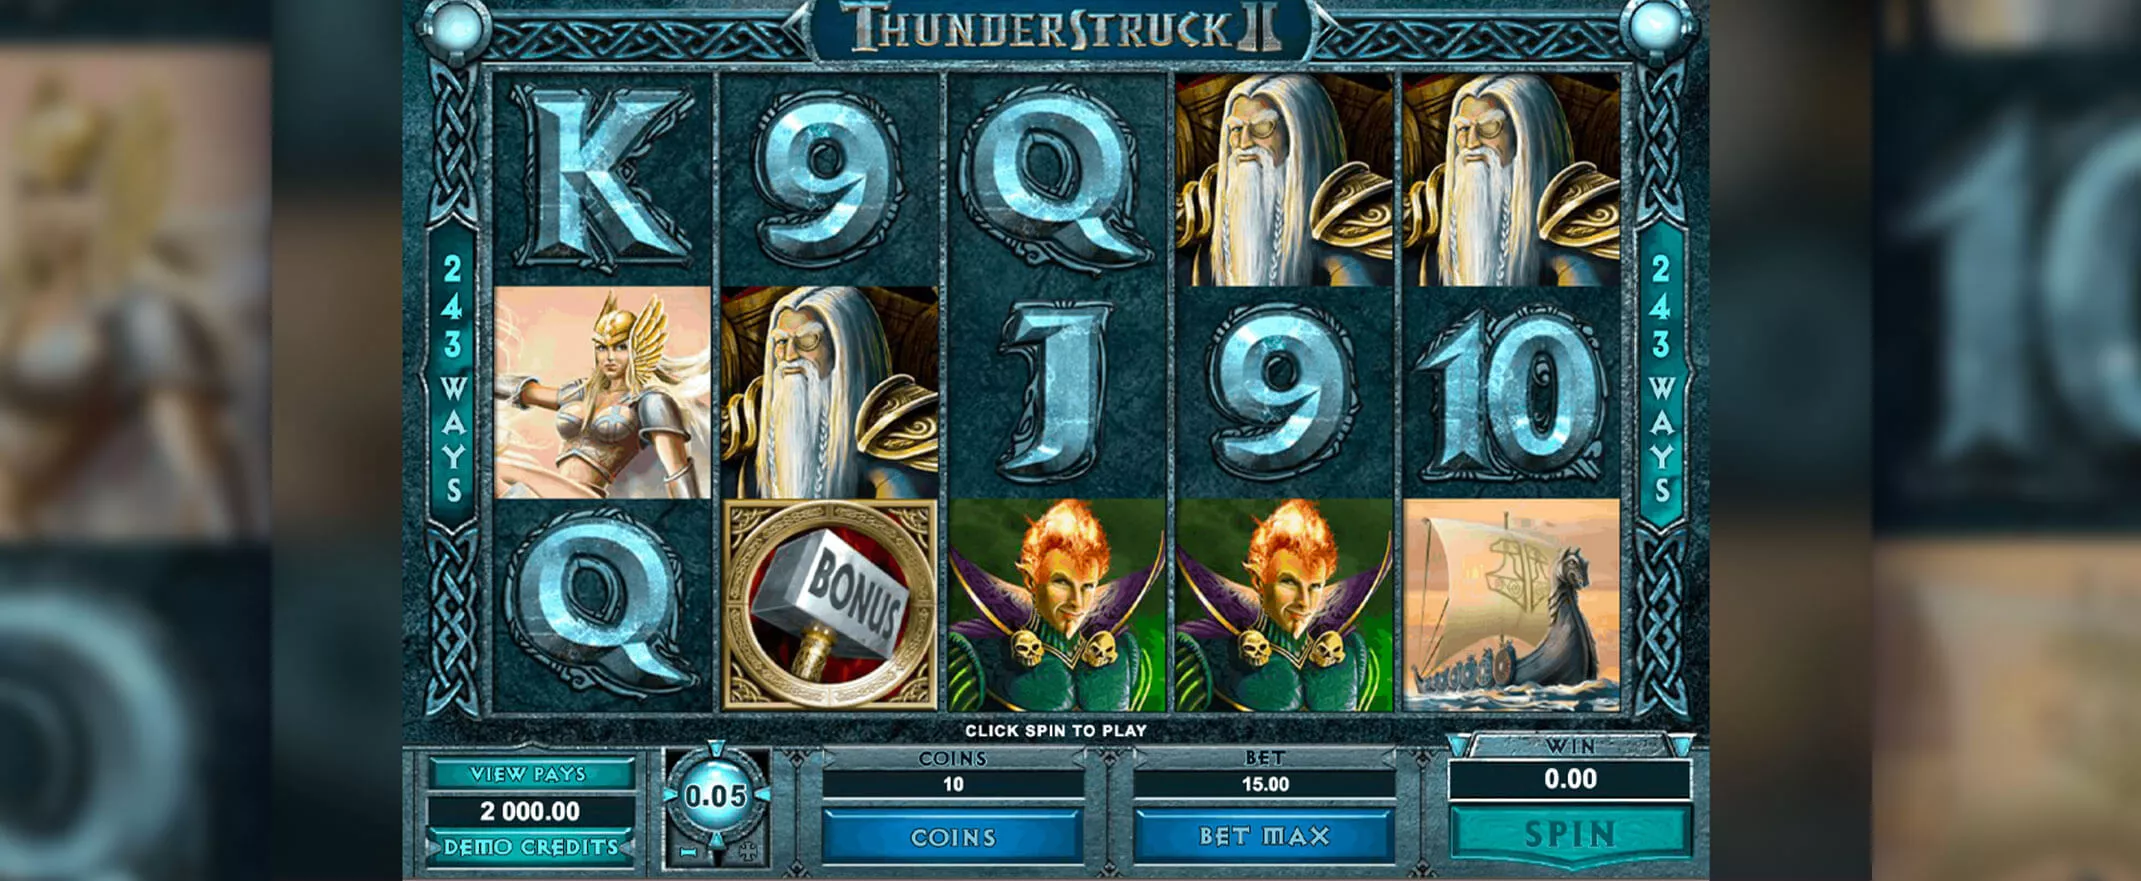 Thunderstruck 2 screenshot of the bonus round